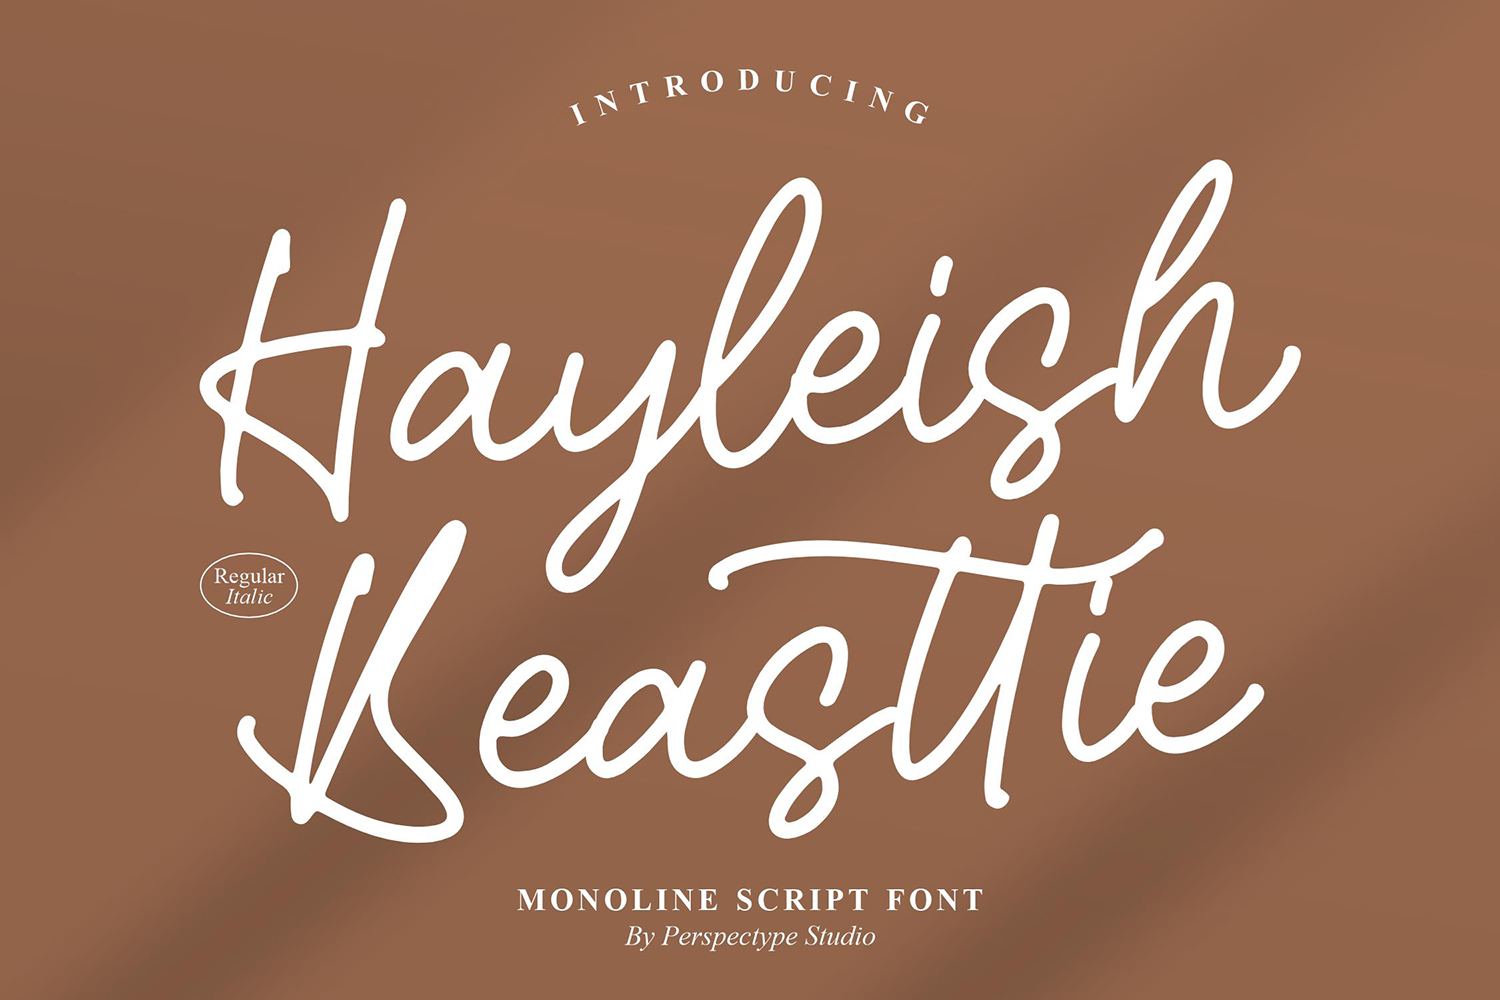 Hayleish Beasttie Free Font